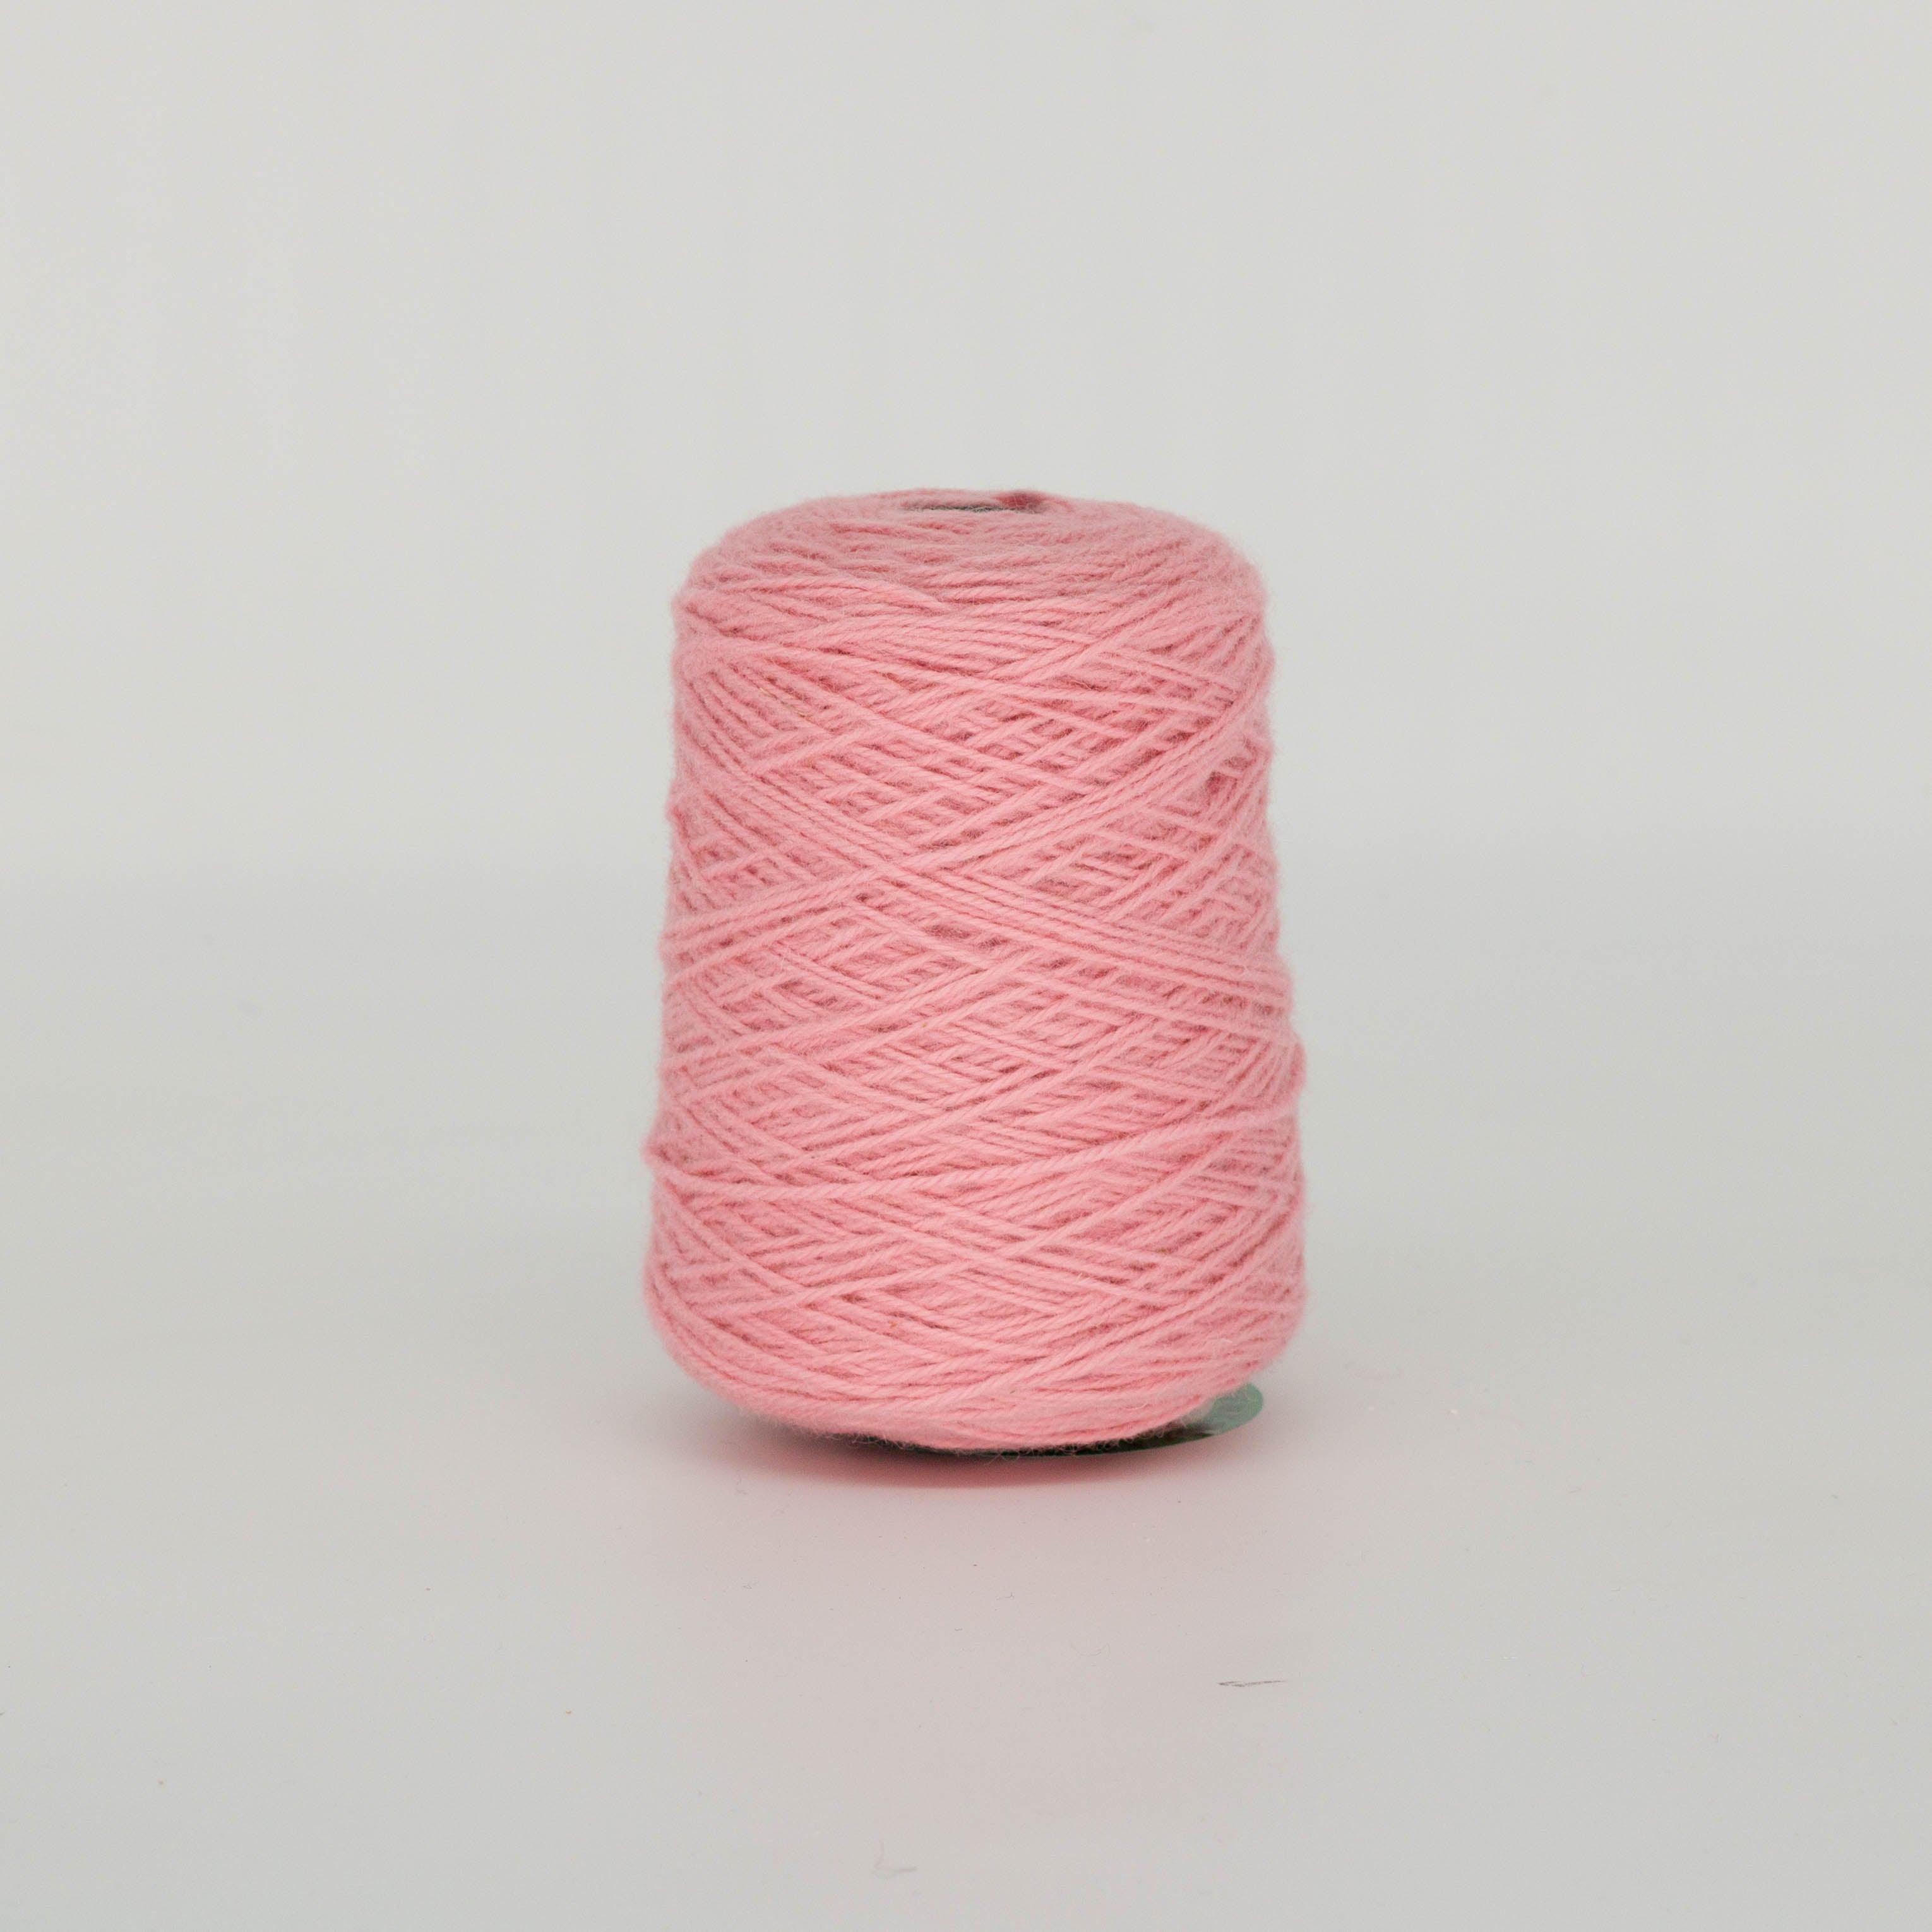 Hilo de mechones de lana 100% rosa concha en cono (459)